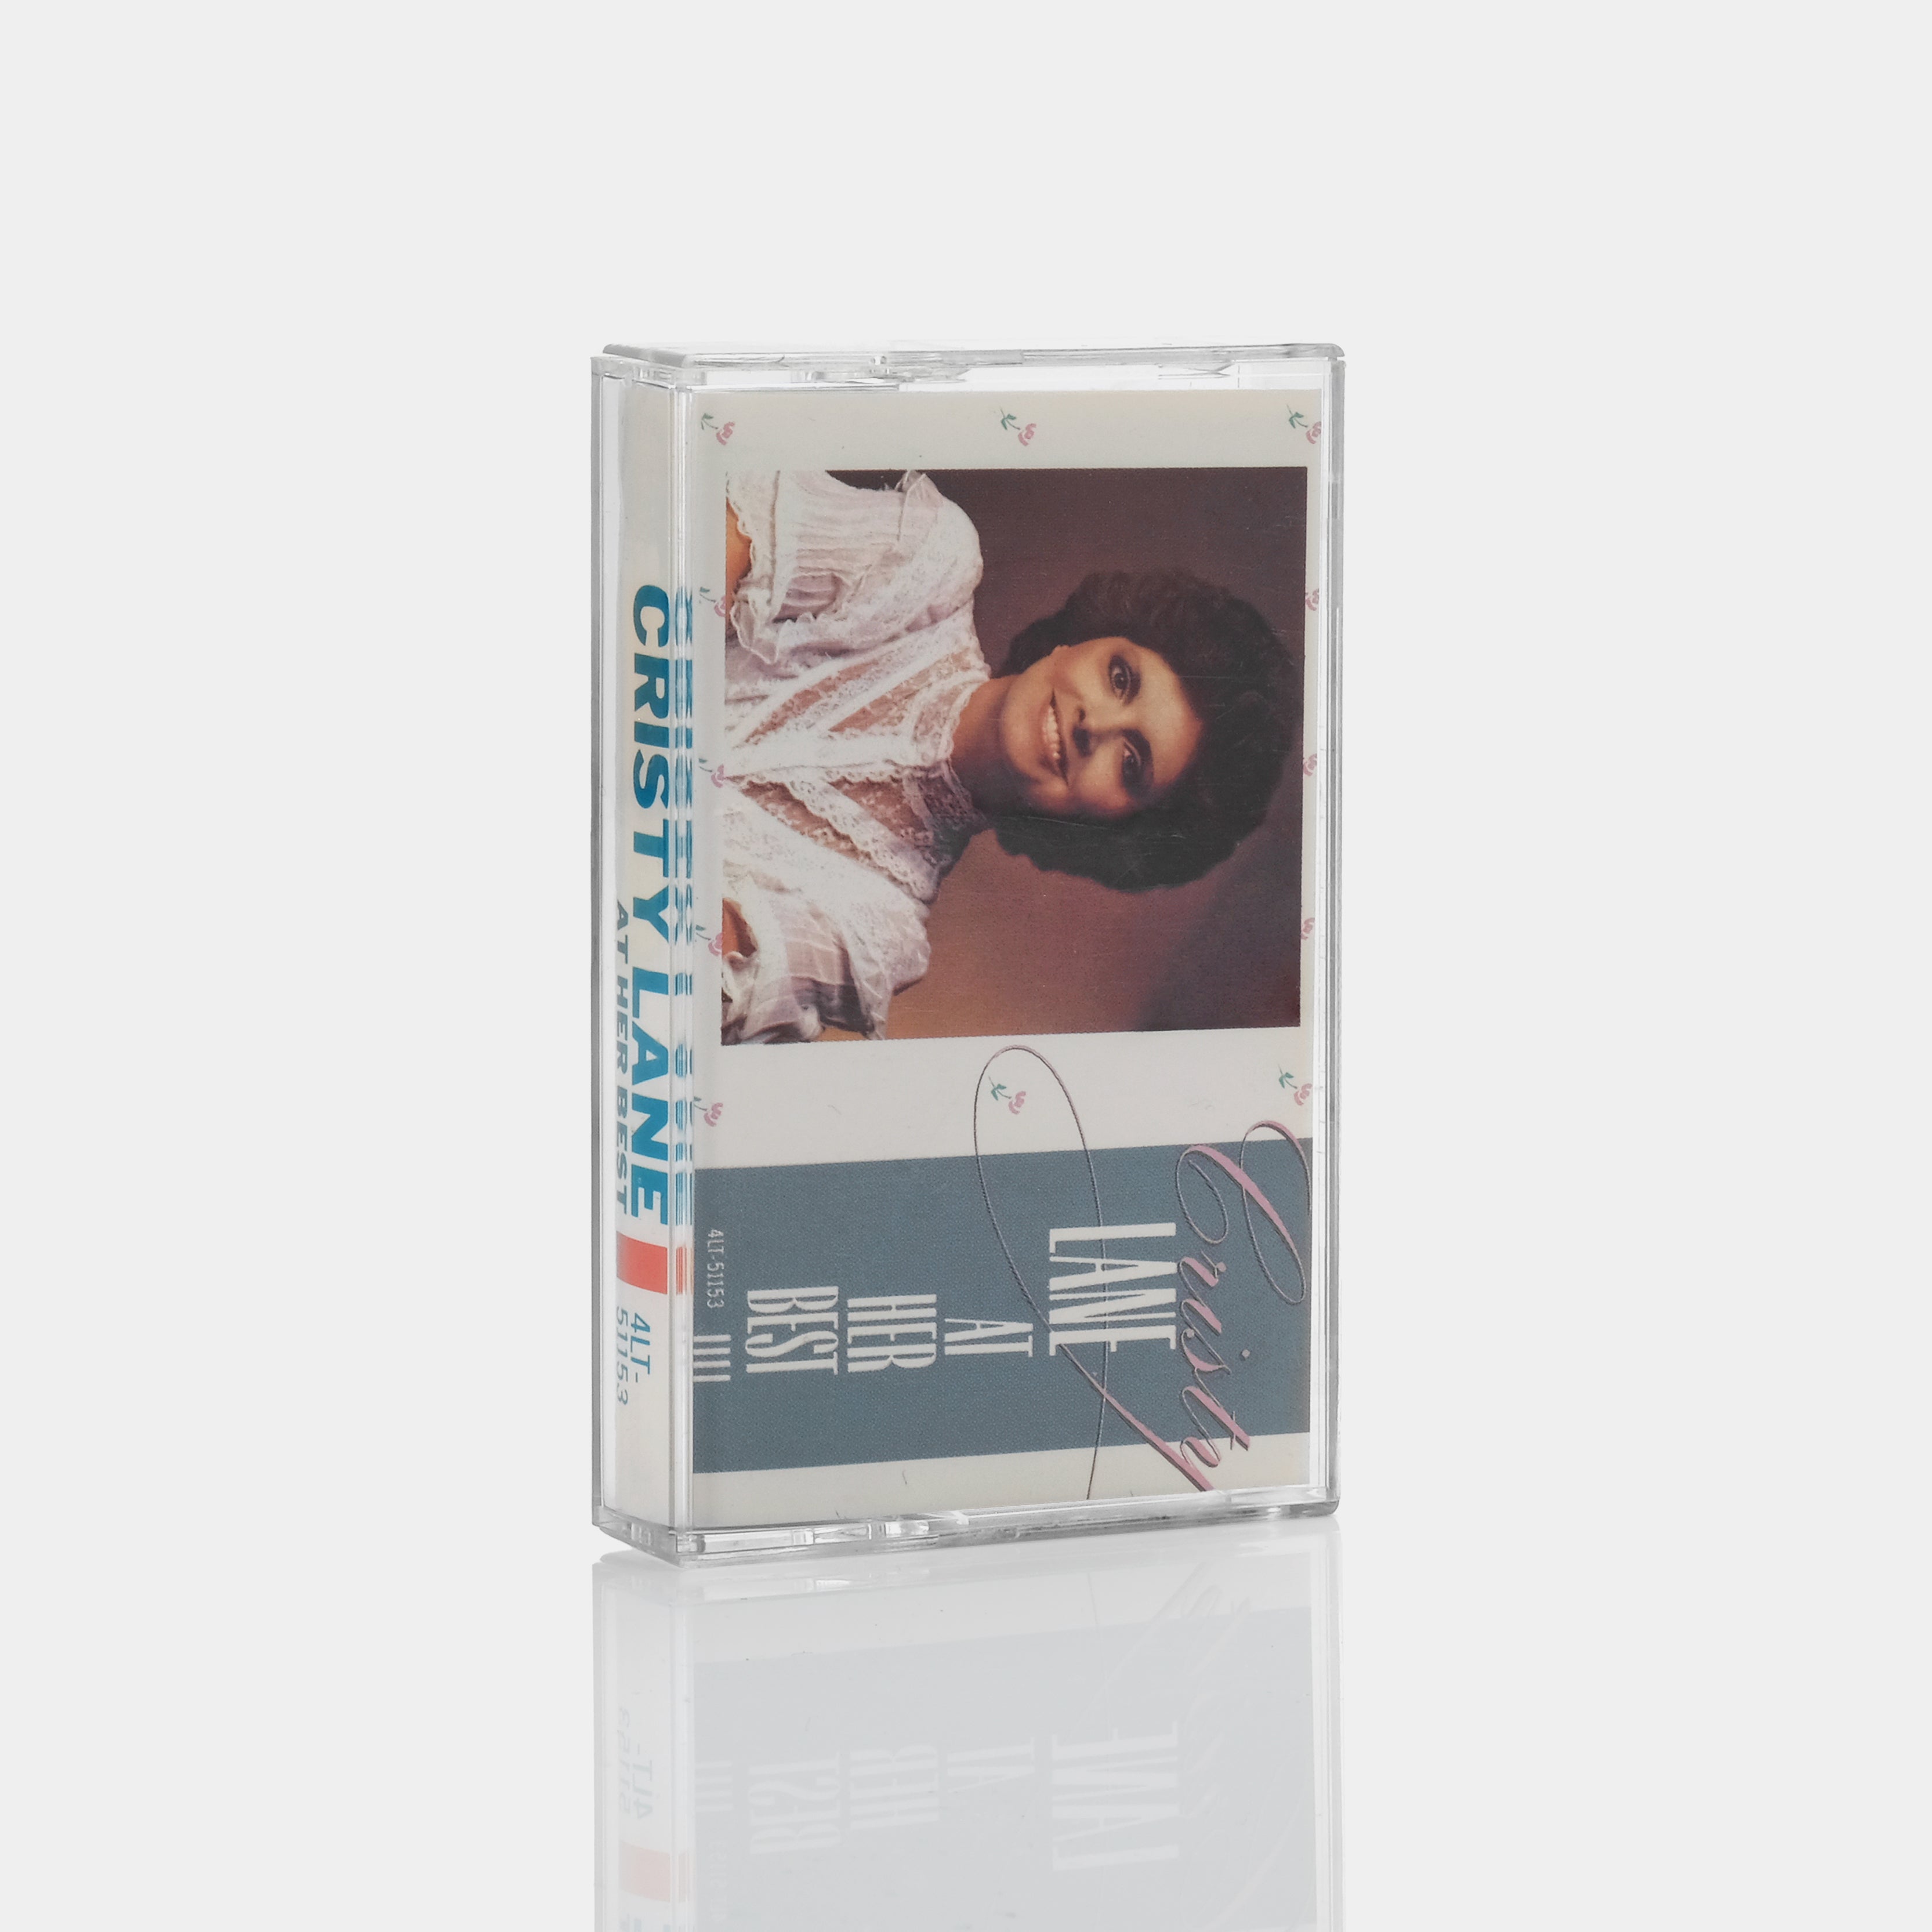 Cristy Lane - At Her Best Cassette Tape